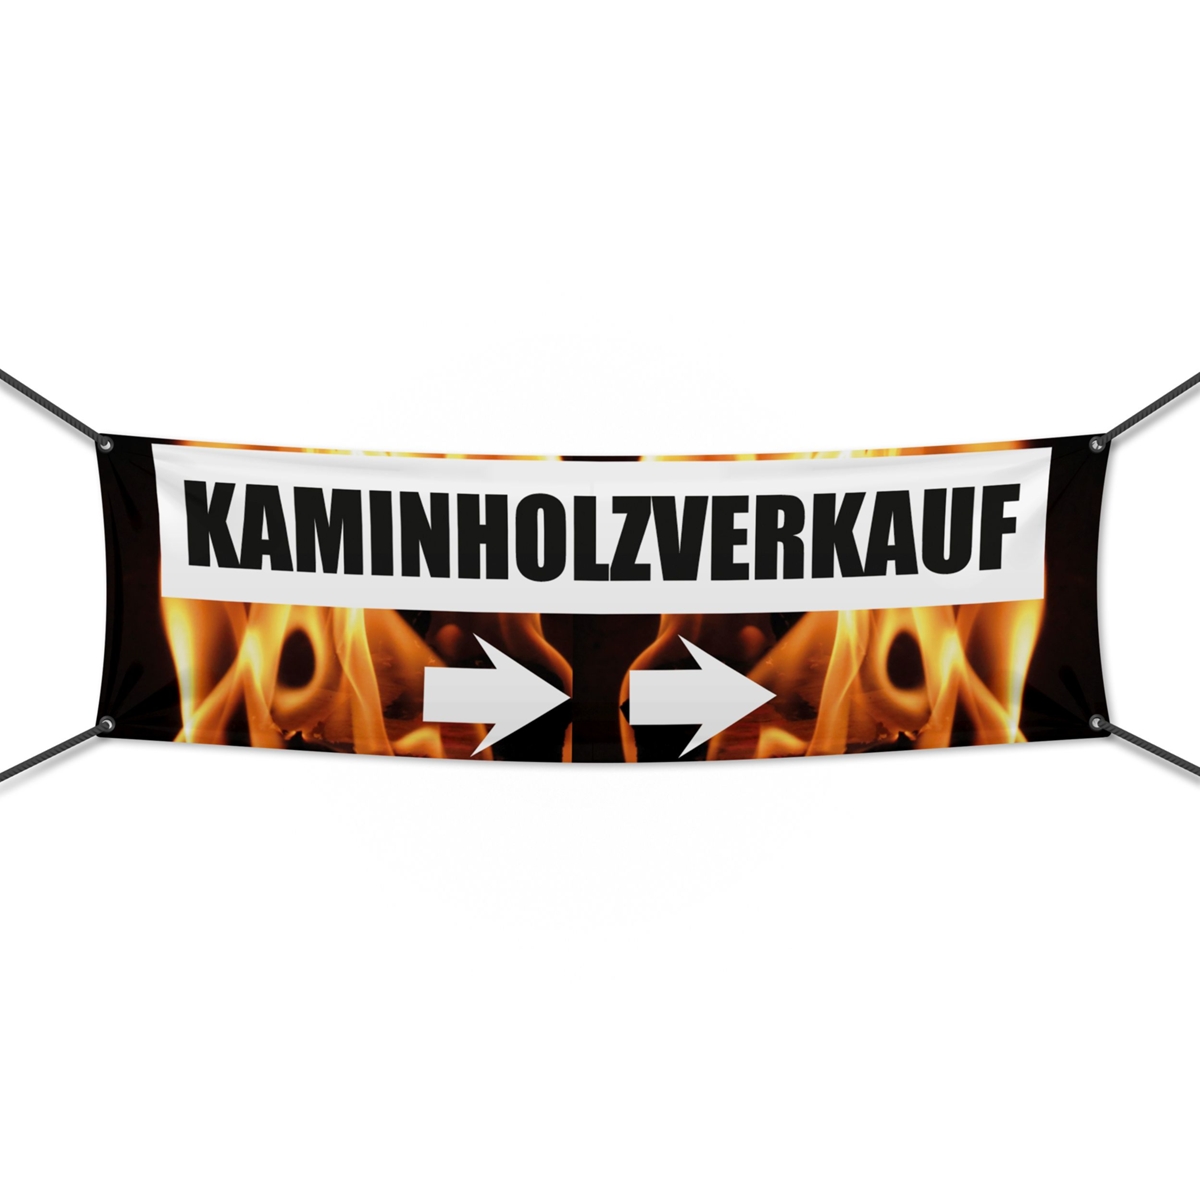 Kaminholz Verkauf Werbebanner | Wunschgröße (2330)